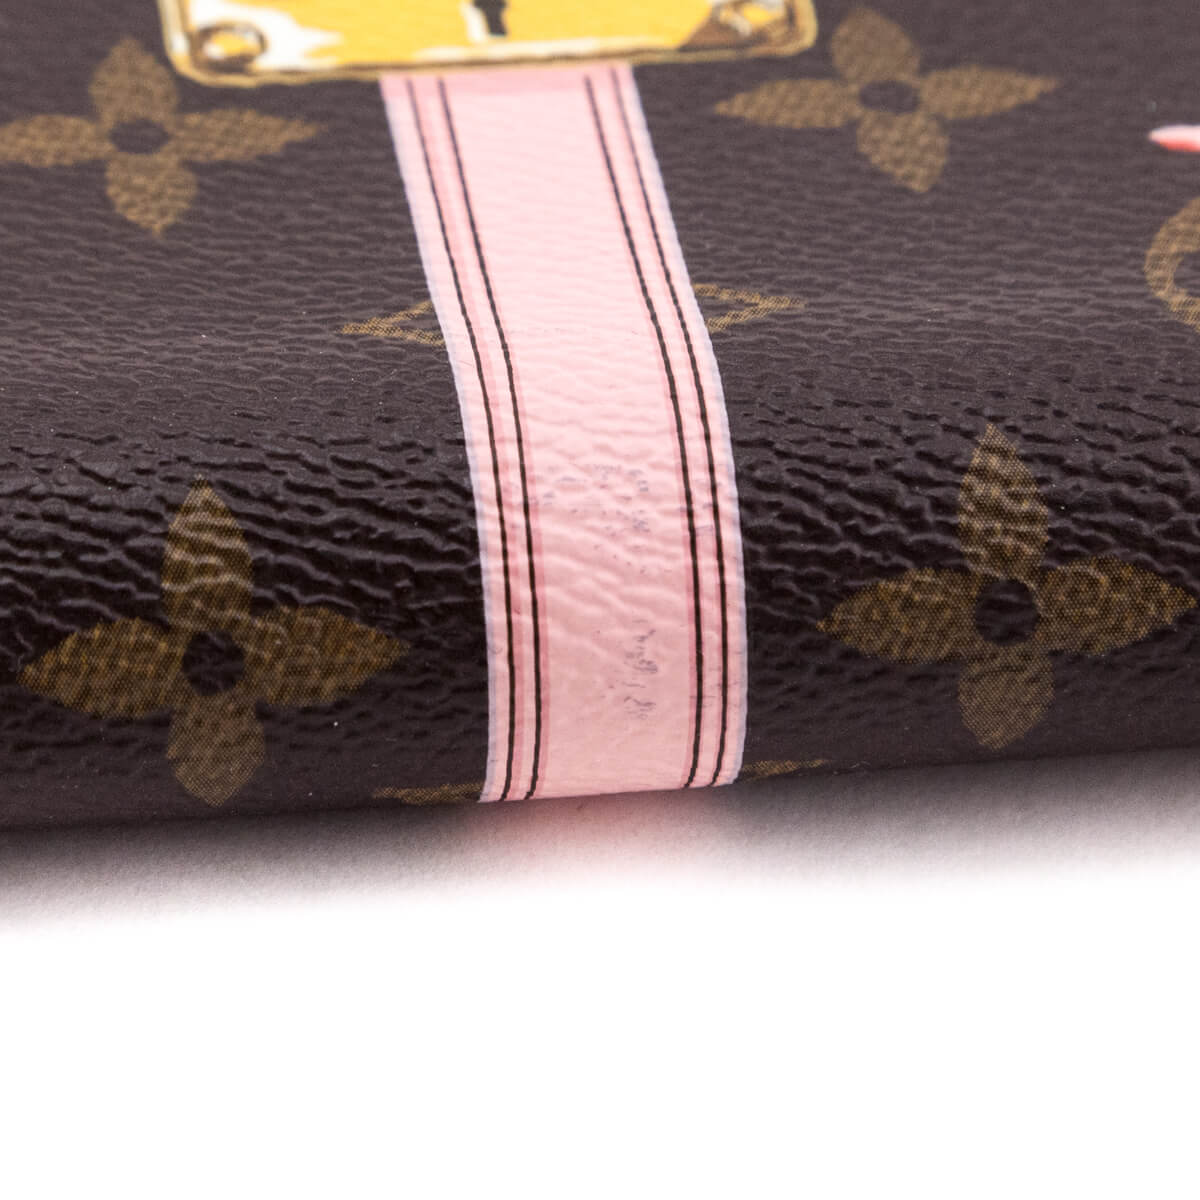 Louis Vuitton Monogram Summer Trunks Zippy Wallet 618664